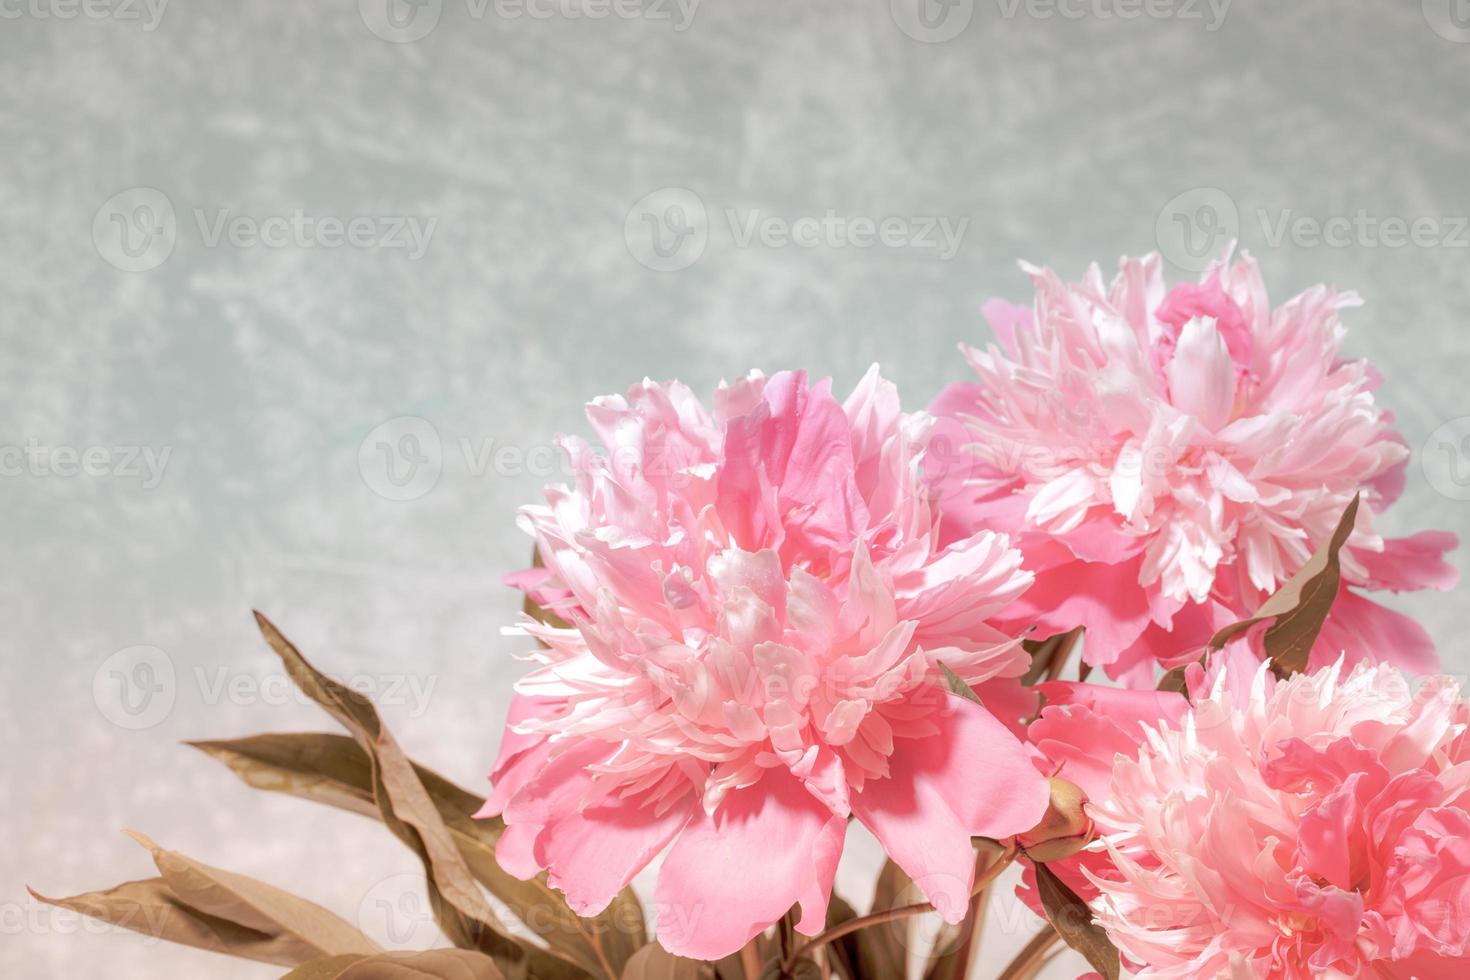 maravillosas peonías frescas de color rosa pálido sobre fondo gris claro con espacio para copiar. foto